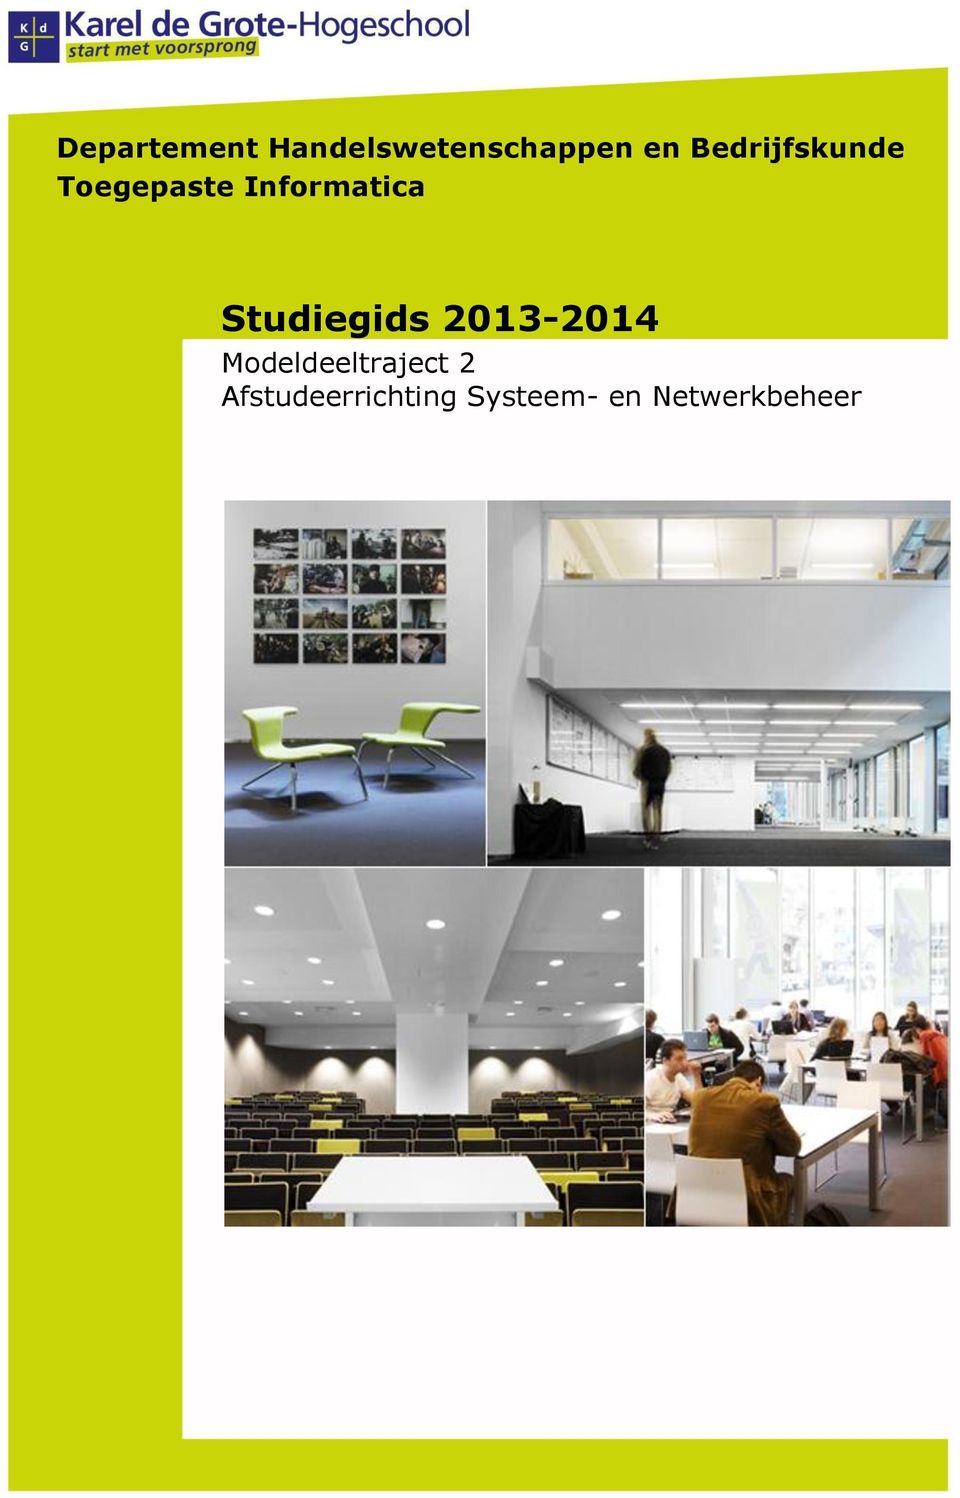 Studiegids 2013-2014 Modeldeeltraject